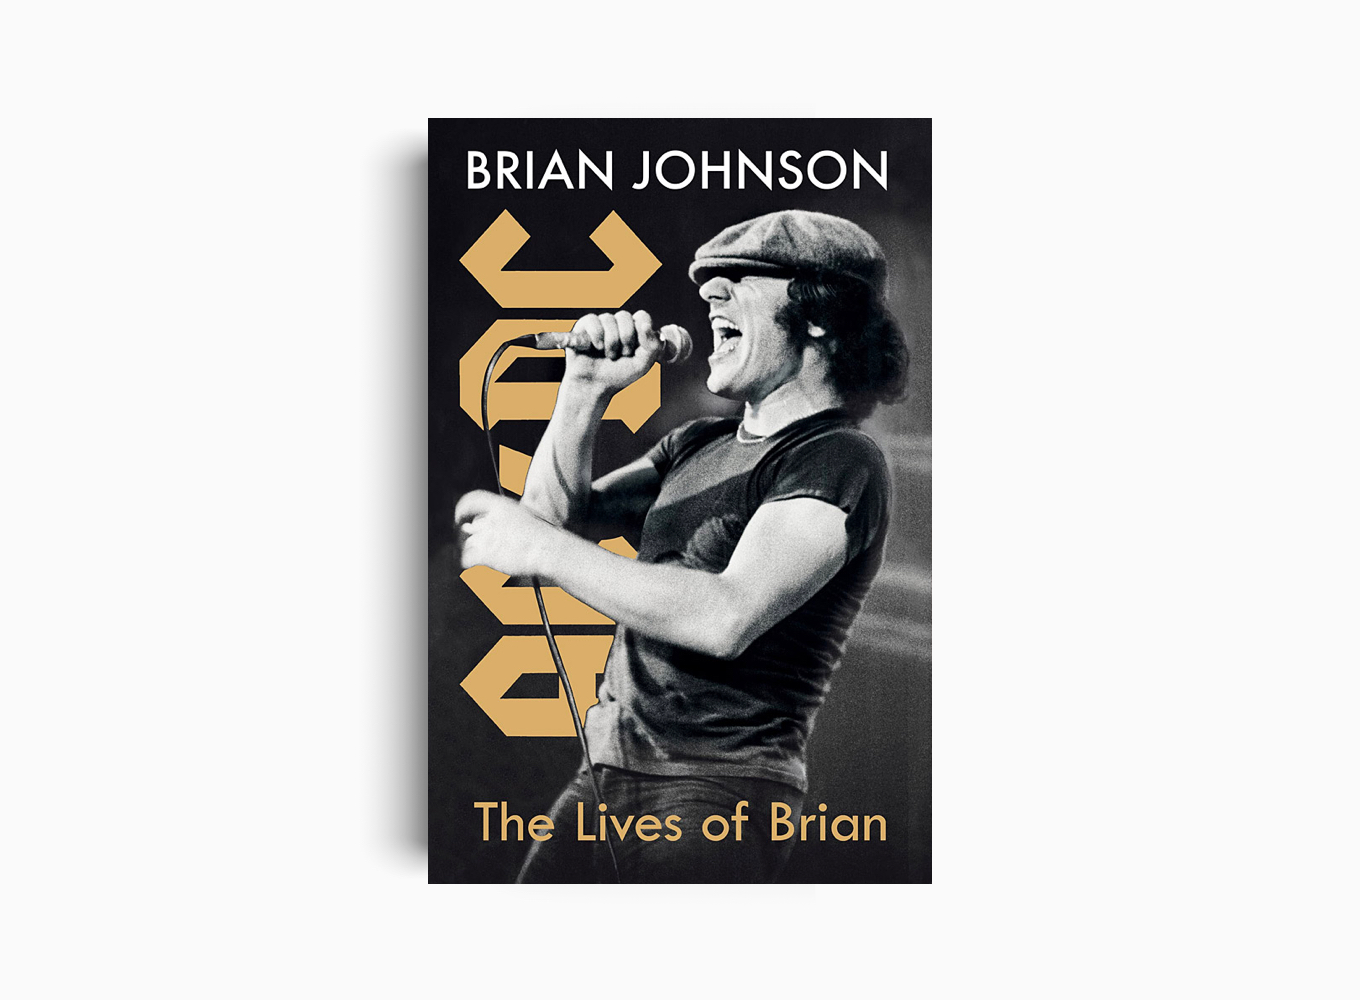 THE LIVES OF BRIAN: A MEMOIR